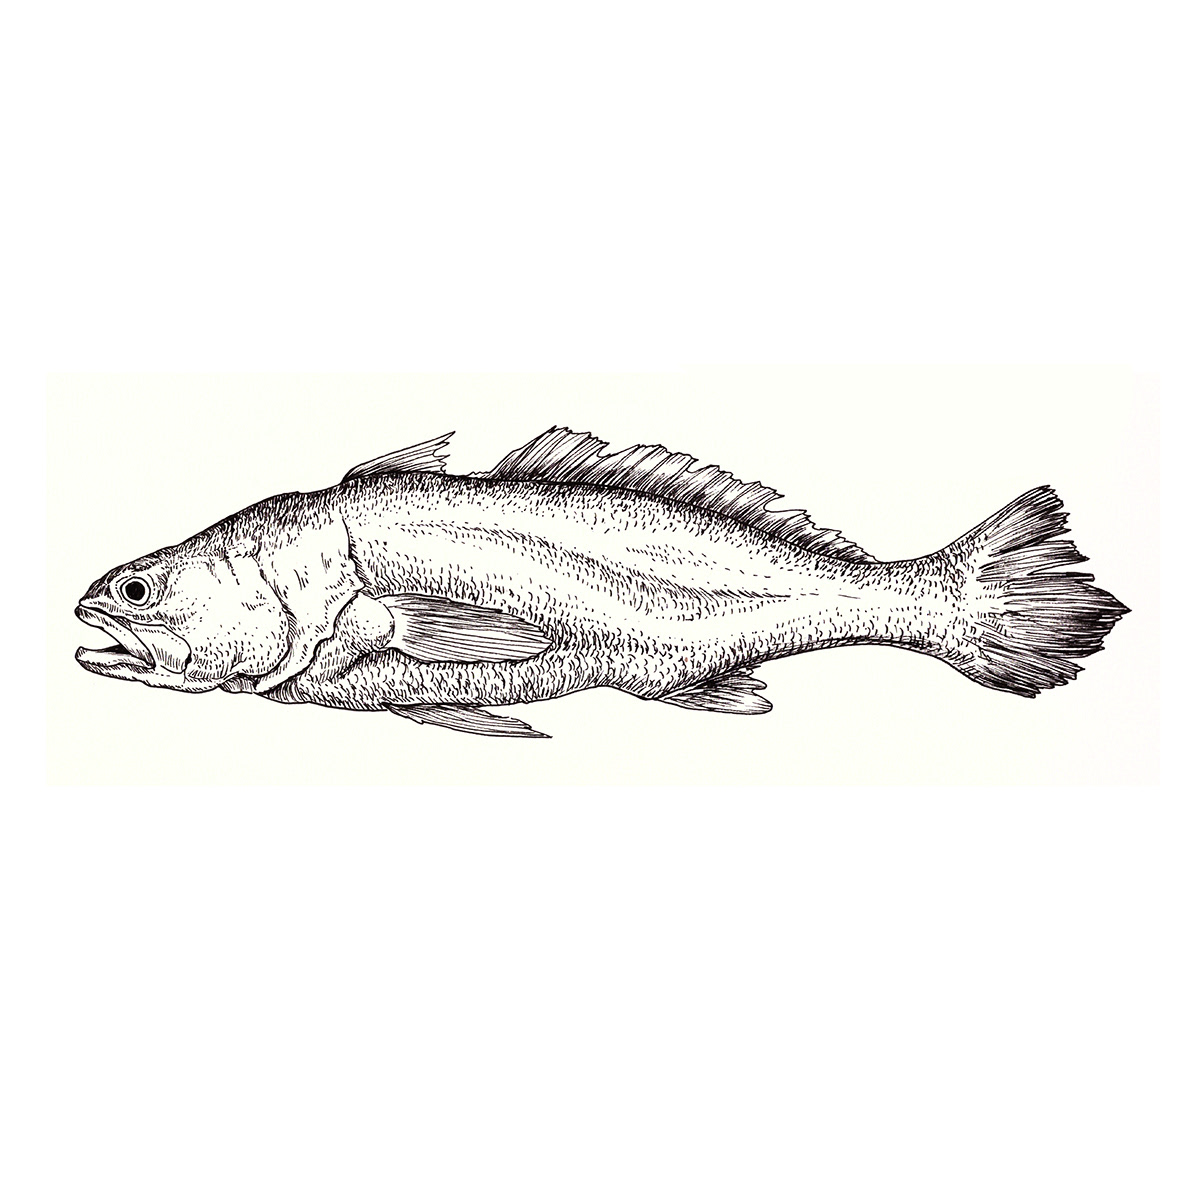 sangara científica ilustracion mar camaron langosta ostra pescado atun pez